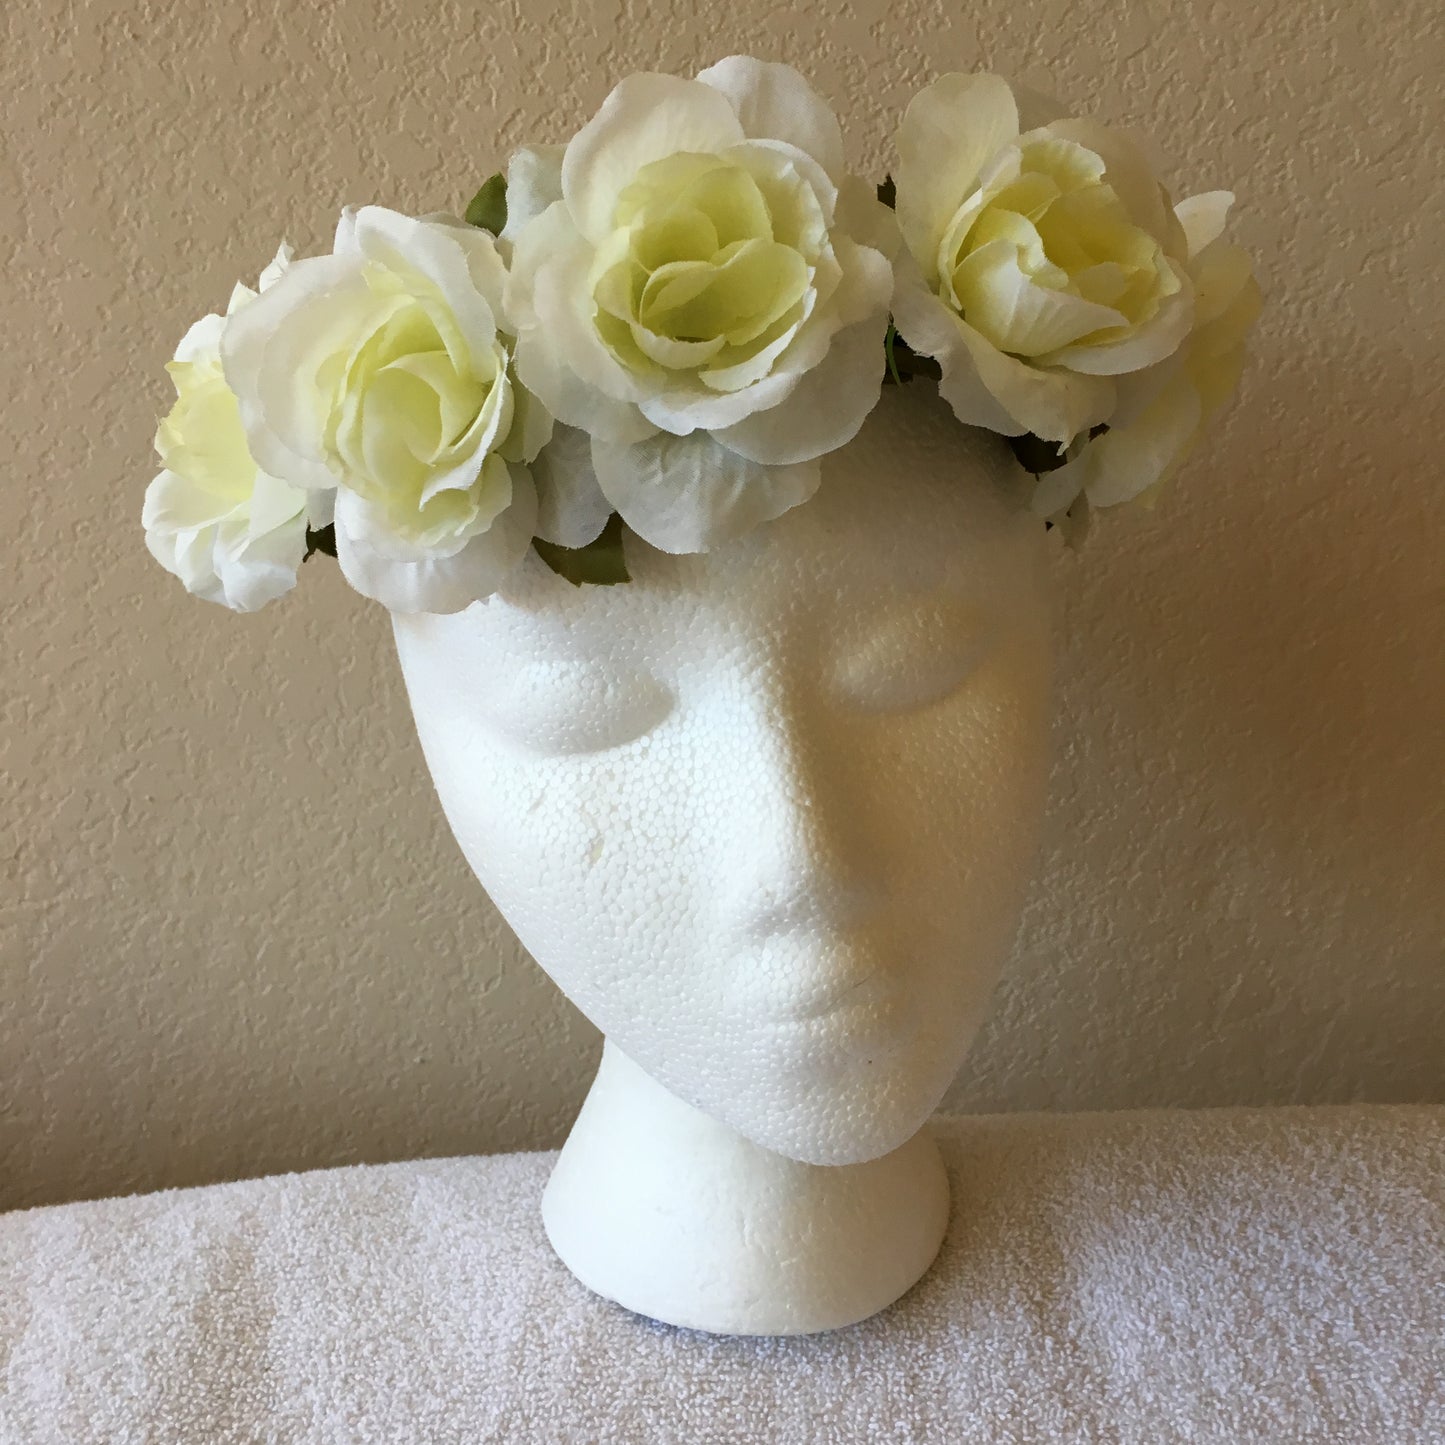 Medium Wreath - All white roses